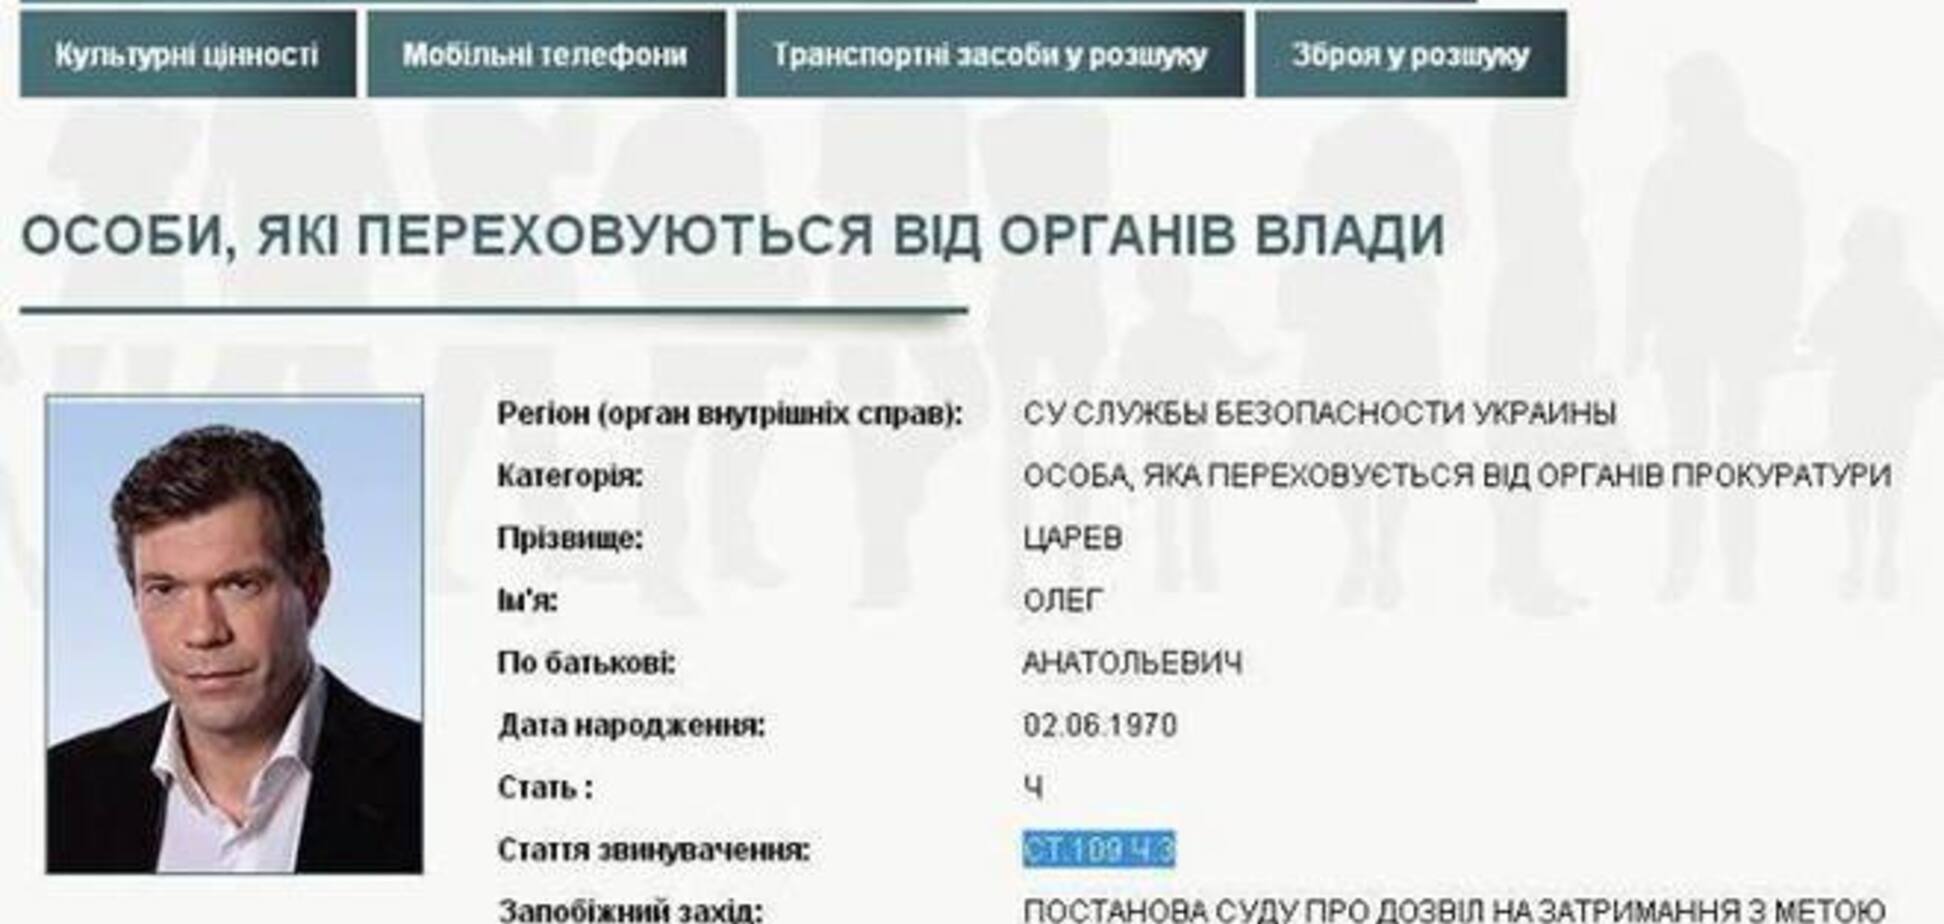 Оголошений у розшук Царьов знайшовся в Донецьку